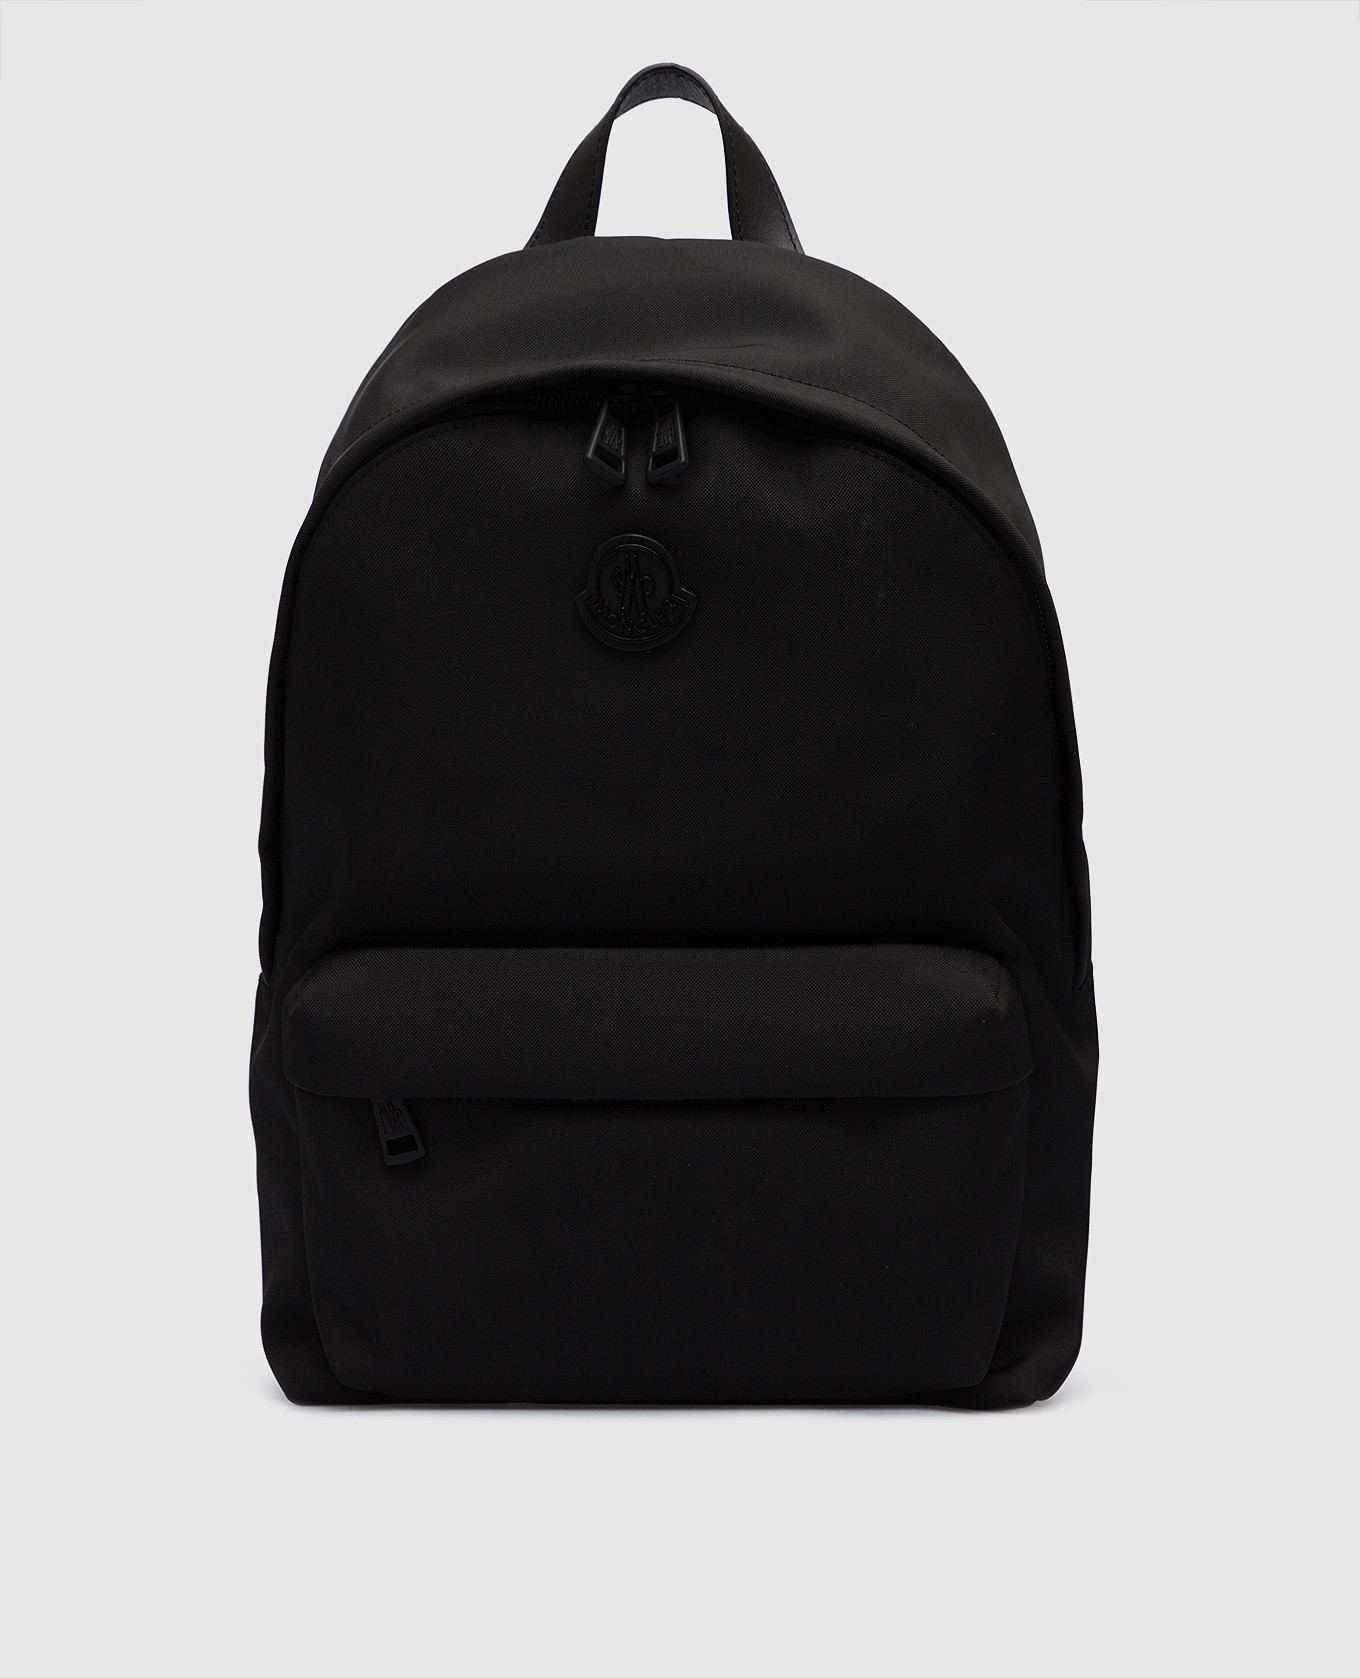 Черный рюкзак Pierrick с патчем логотипа